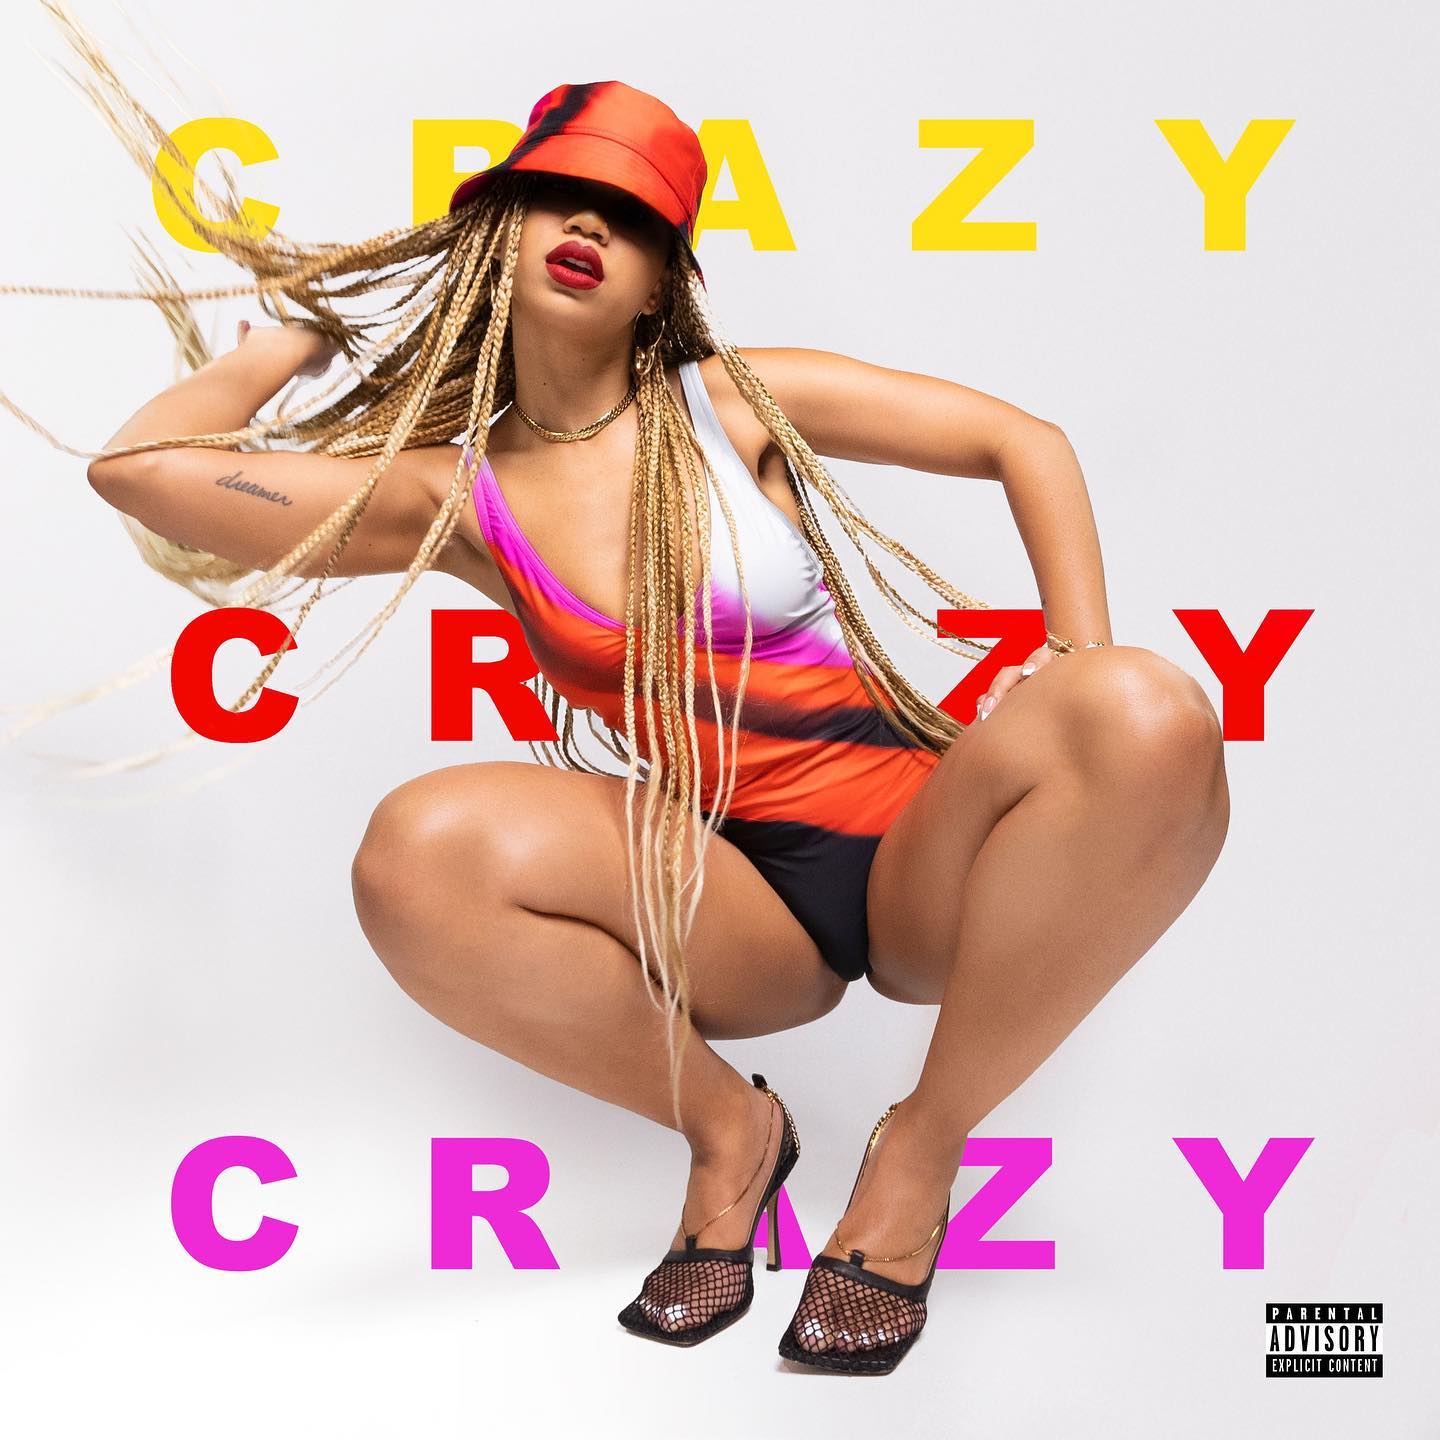 Cover of Amanda Reifer single, "Crazy".